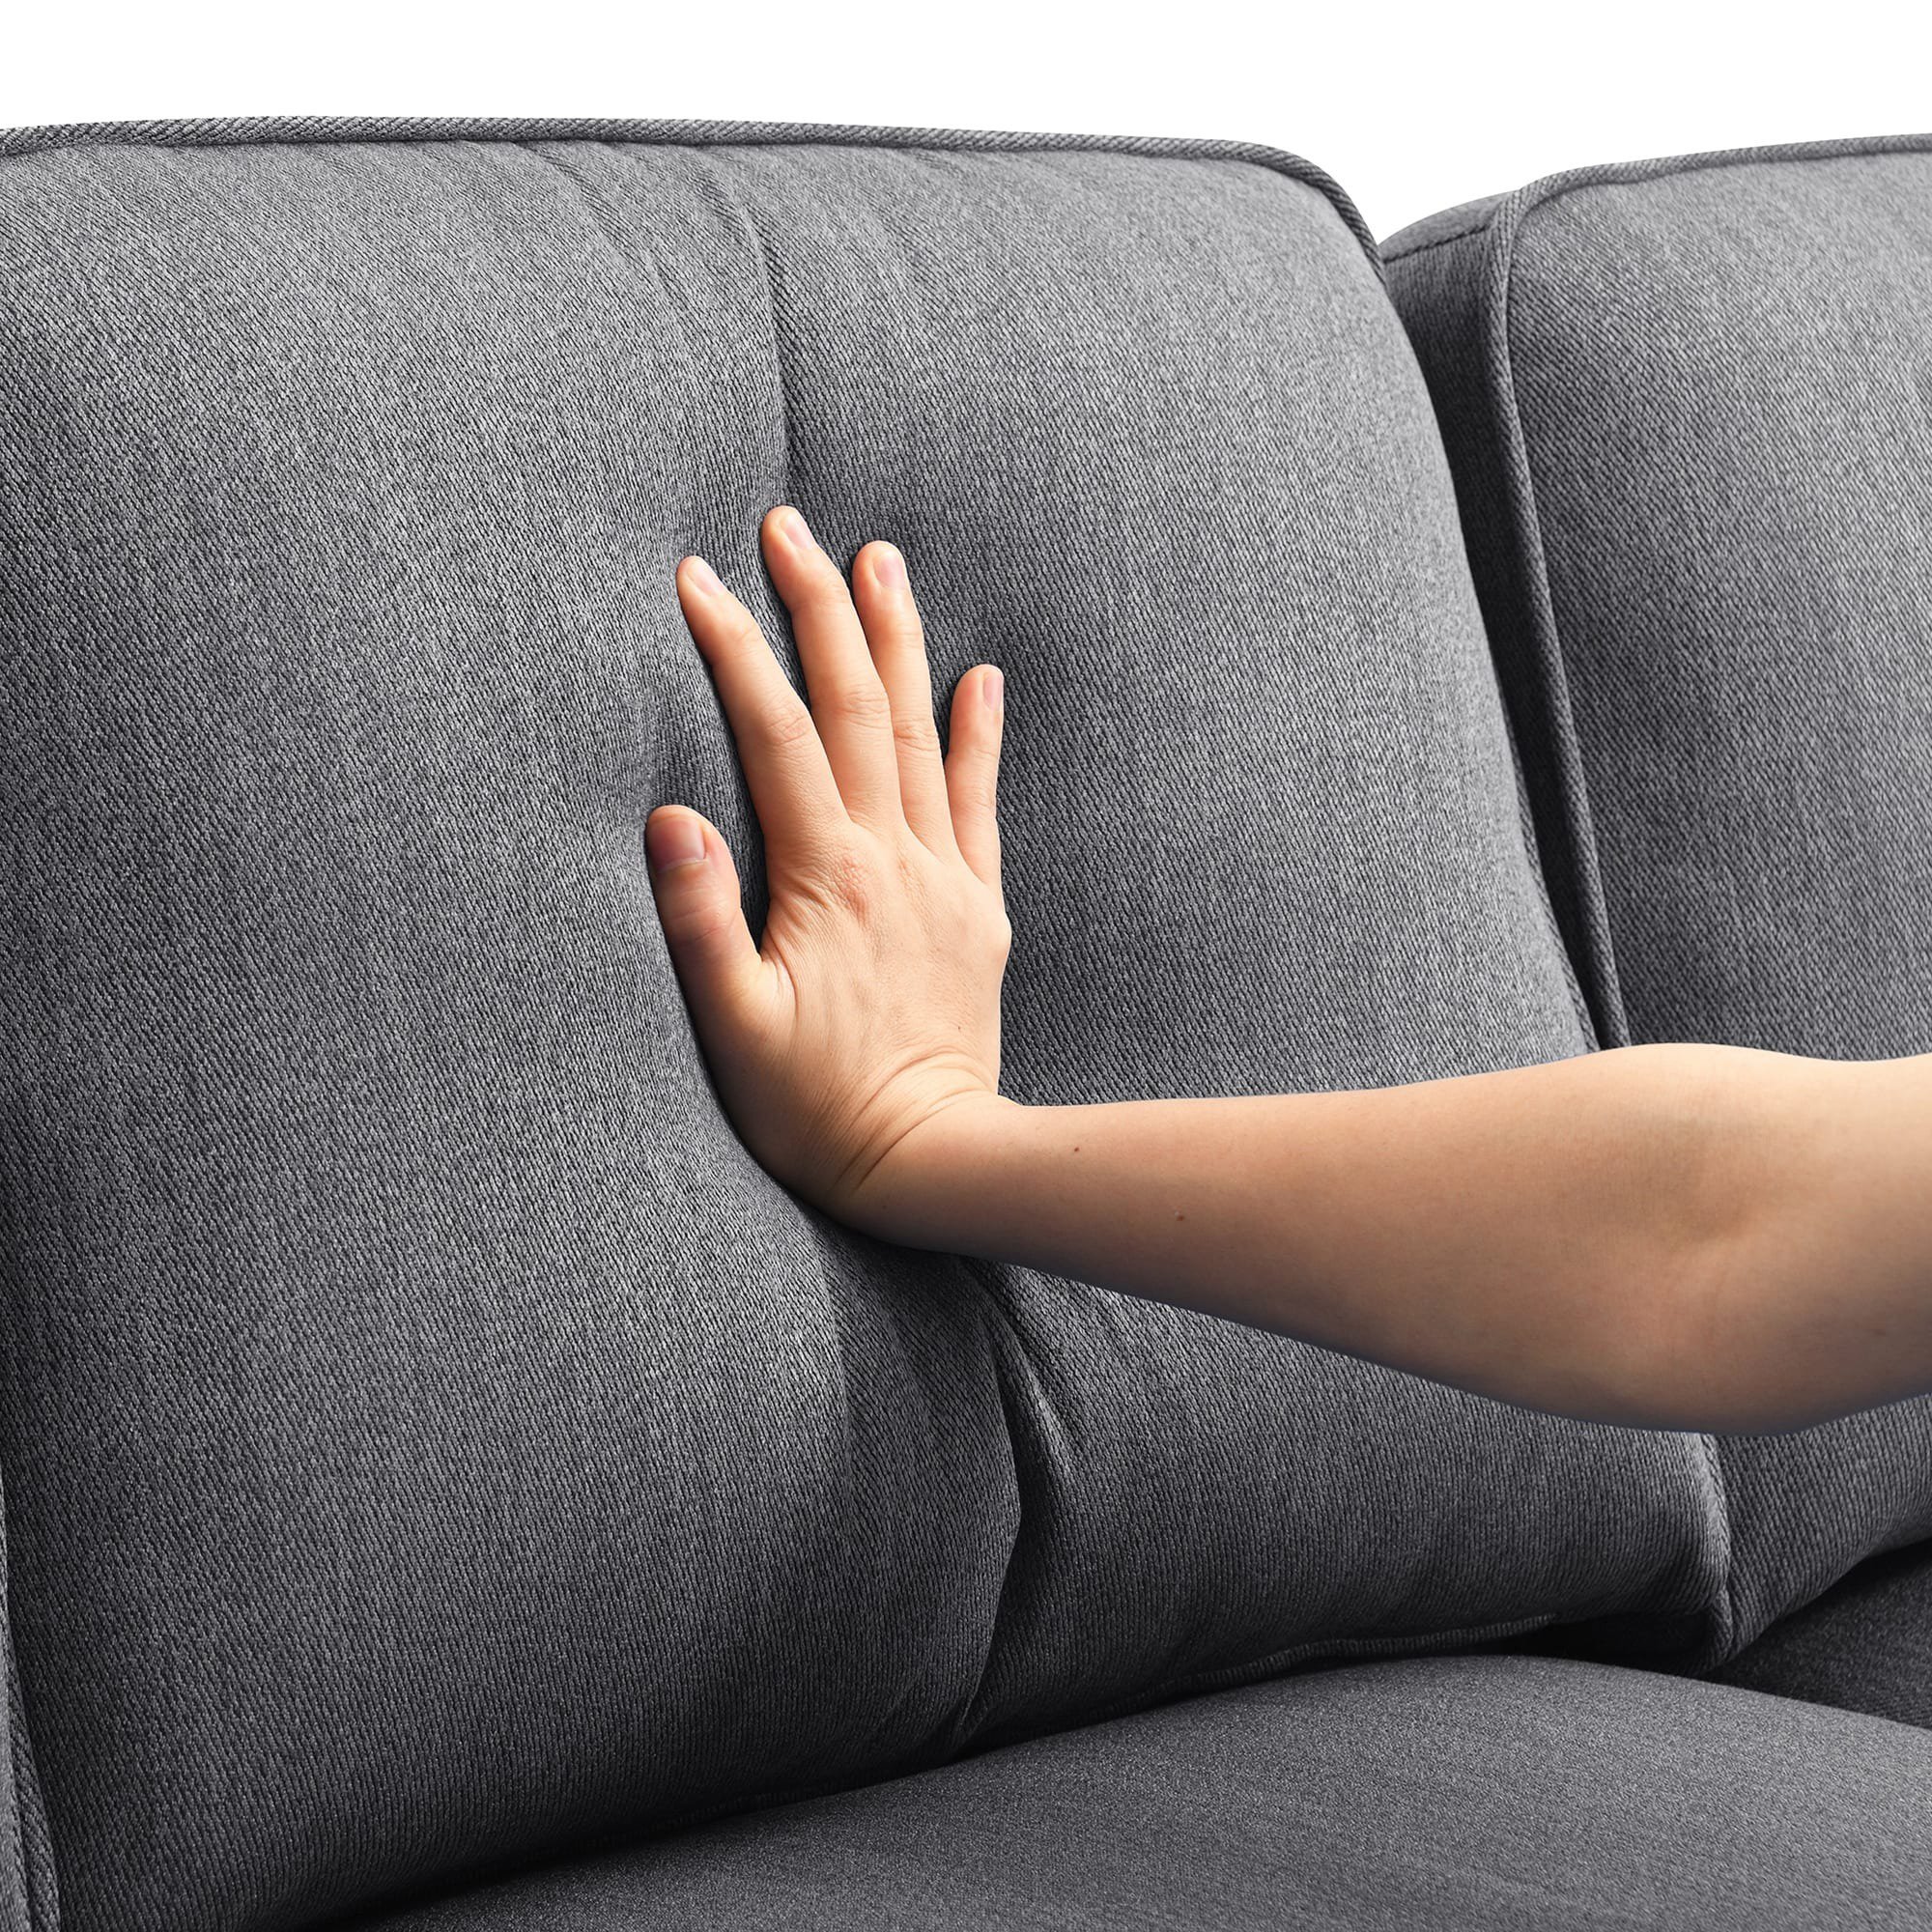 Sofa Gỗ Đệm Rời: Top Mẫu Đẹp, Giá Rẻ Và Những Lưu Ý Cần Biết Khi Mua